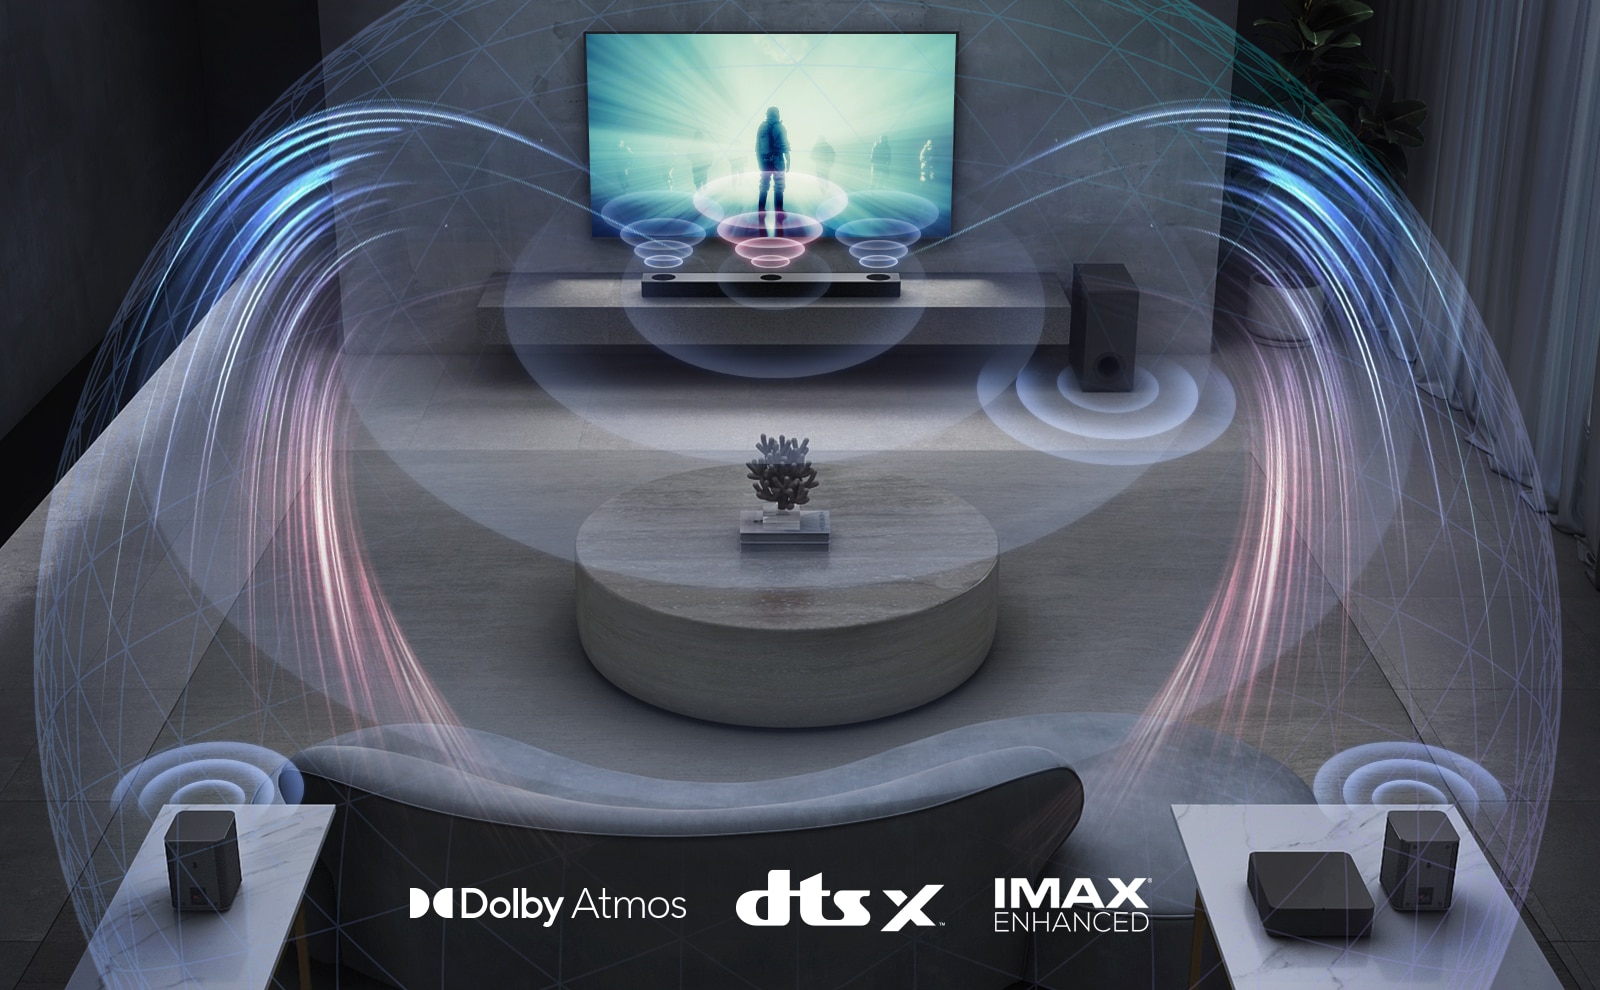 В гостиной телевизор LG на стене, на экране фильм. Саундбар LG находится прямо под телевизором на серой полке, рядом стоит сабвуфер. Комплект из 2 тыловых динамиков находится в задней части гостиной. Графика звуковых эффектов выходит из каждого динамика. Логотип Dolby Atmos и DTS:X, IMAX Enhanced показан в середине нижней части изображения.